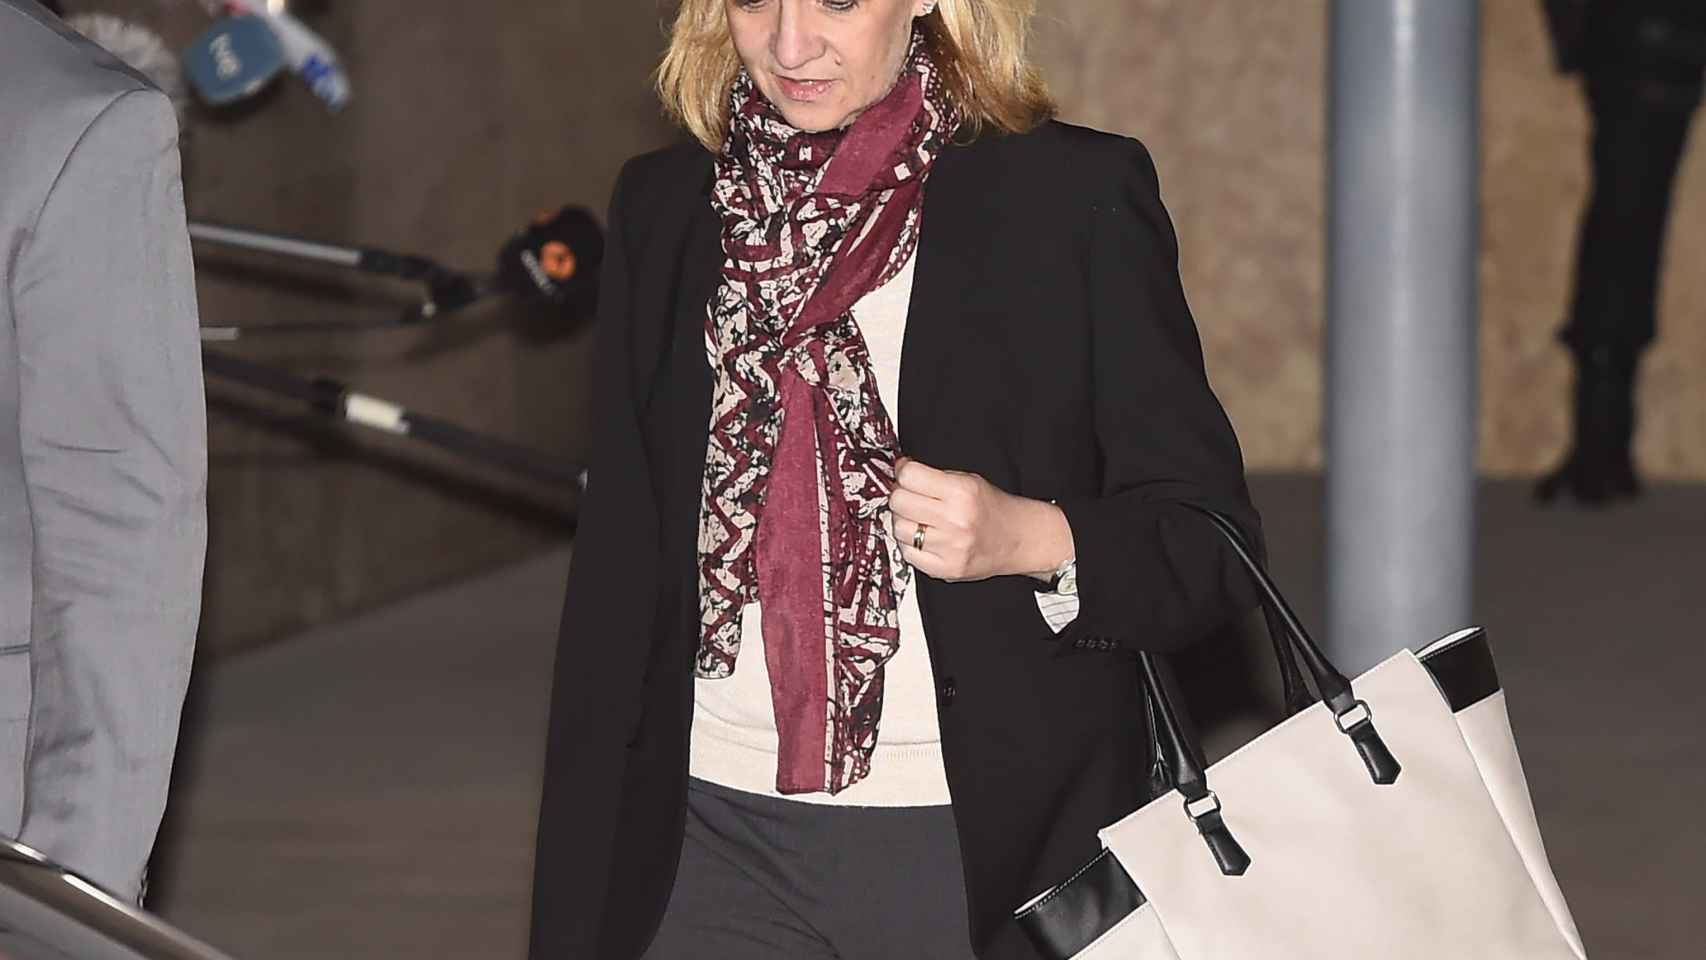 La Infanta Cristina abandona la primera sesión del juicio Nóos tras casi doce horas